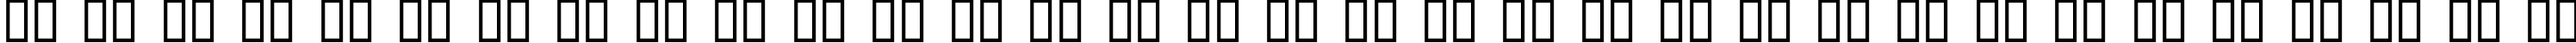 Пример написания русского алфавита шрифтом kroeger 04_65